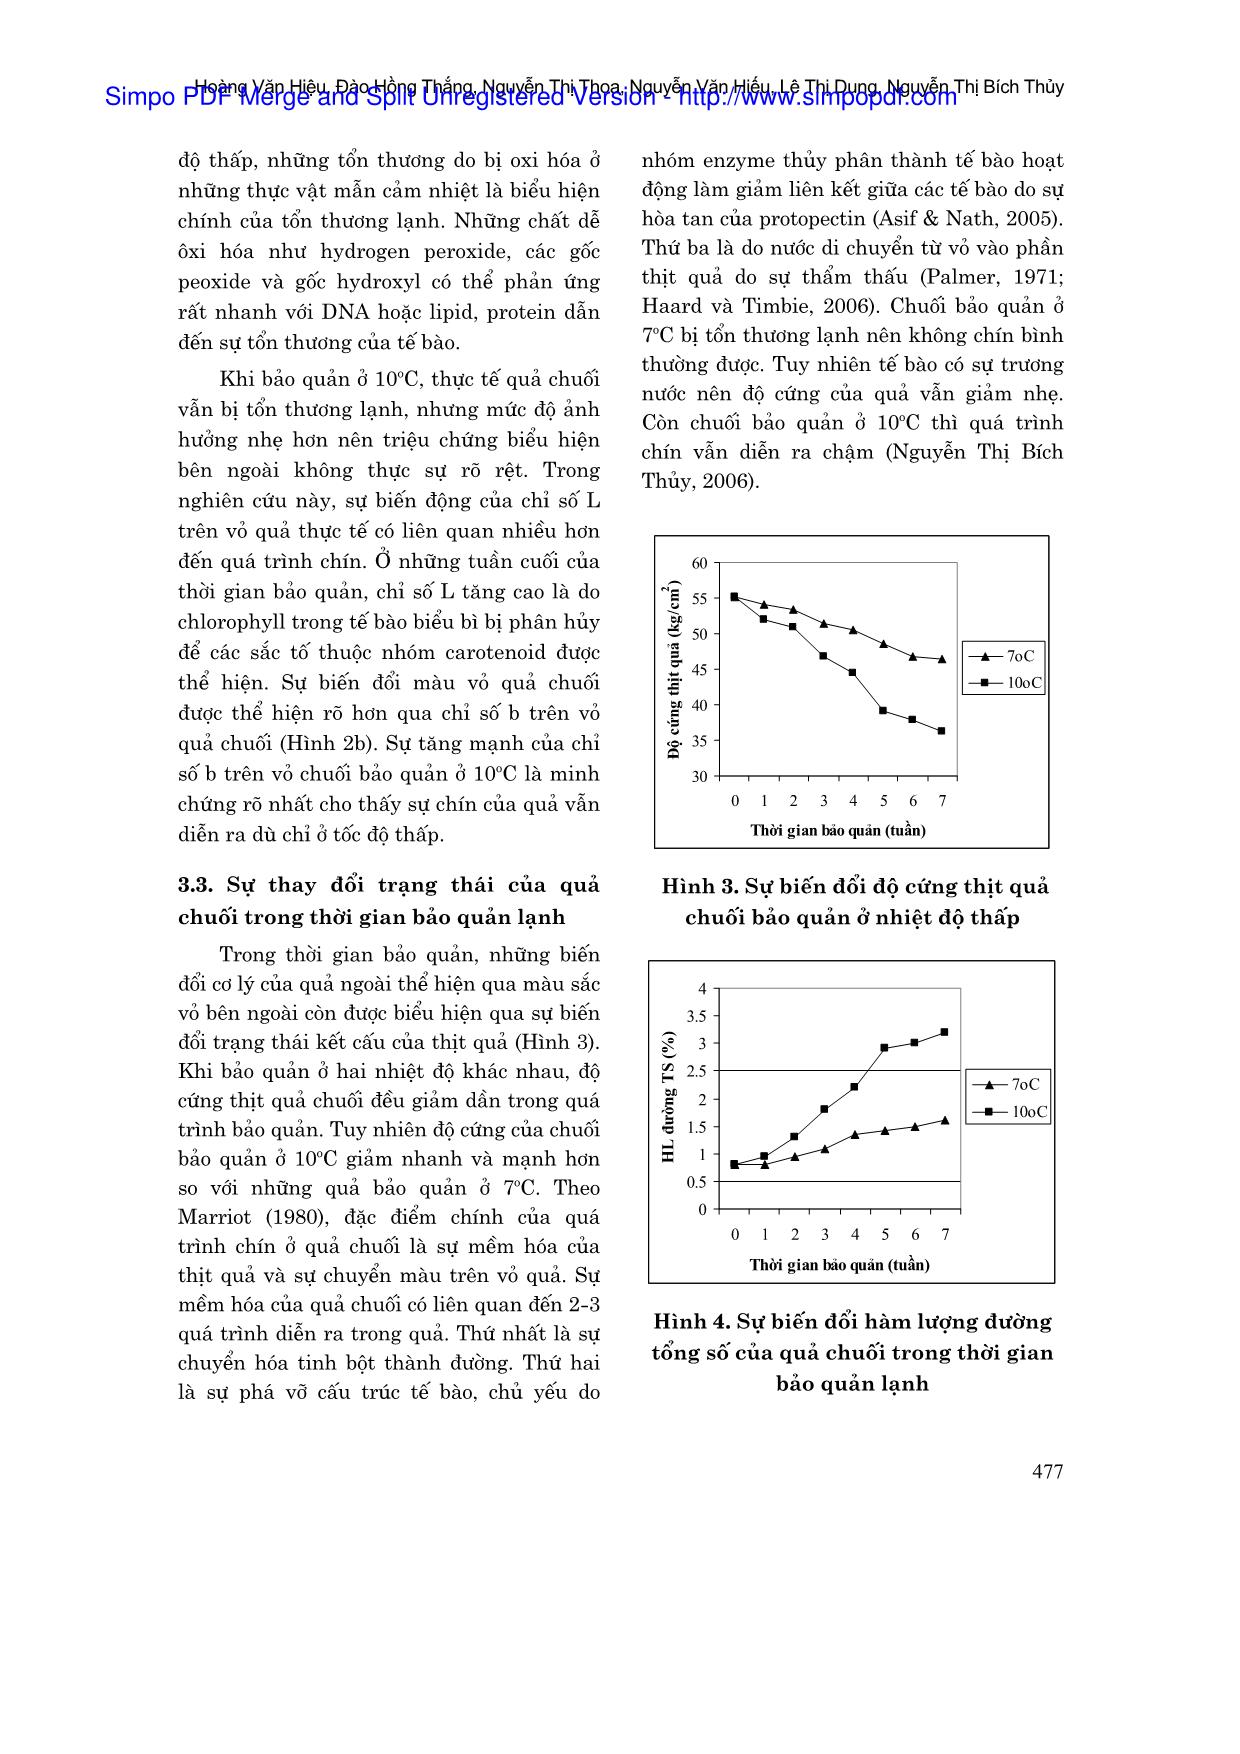 Ảnh hưởng của tổn thương lạnh đến sự biến đổi chất lượng của chuối bảo quản ở nhiệt độ thấp trang 4